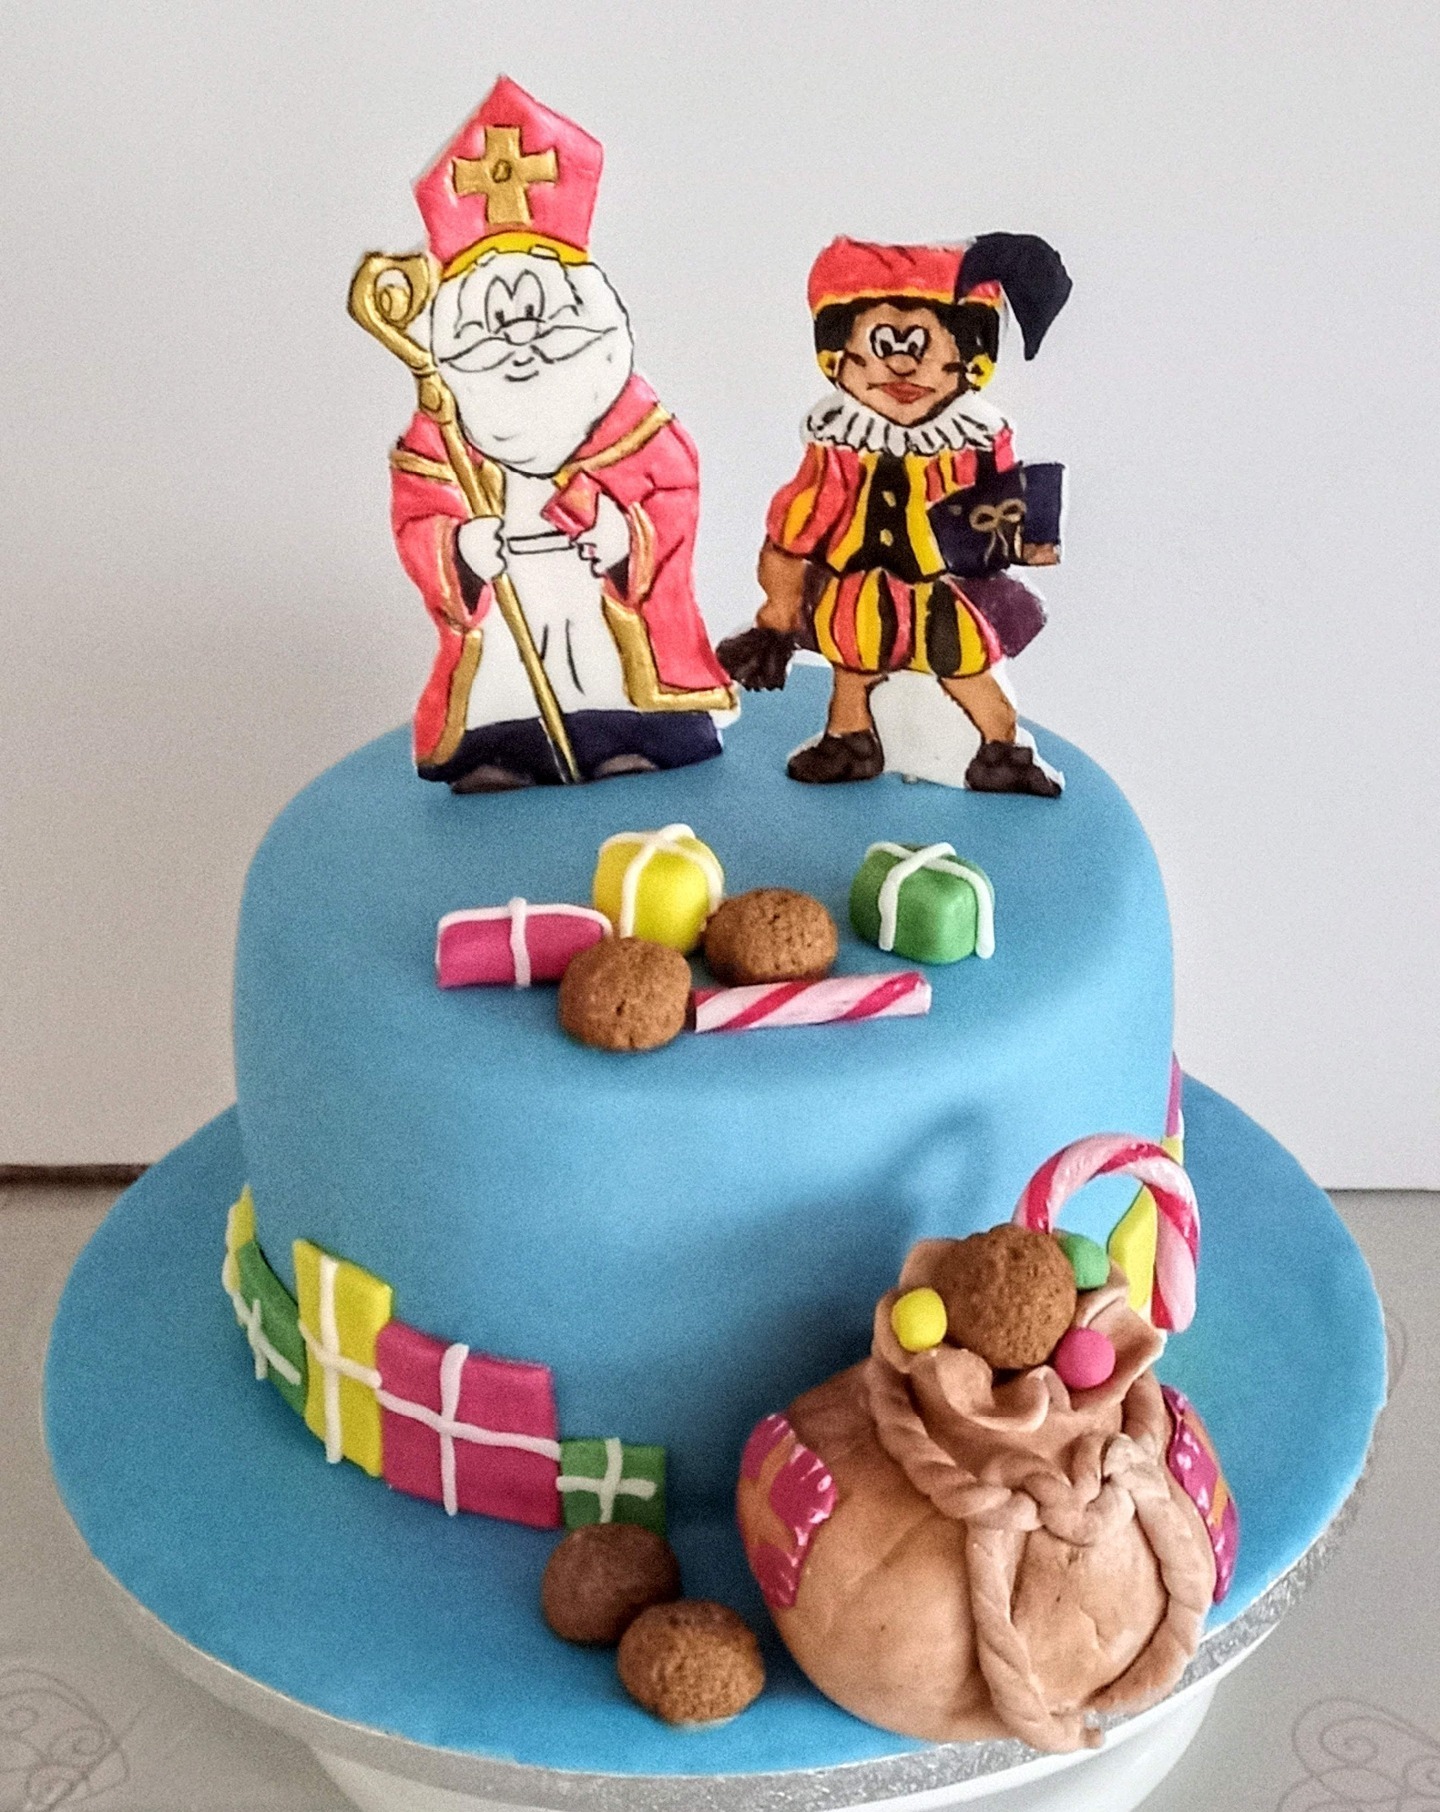 Dutch "Sinterklass" inspired christmas cake